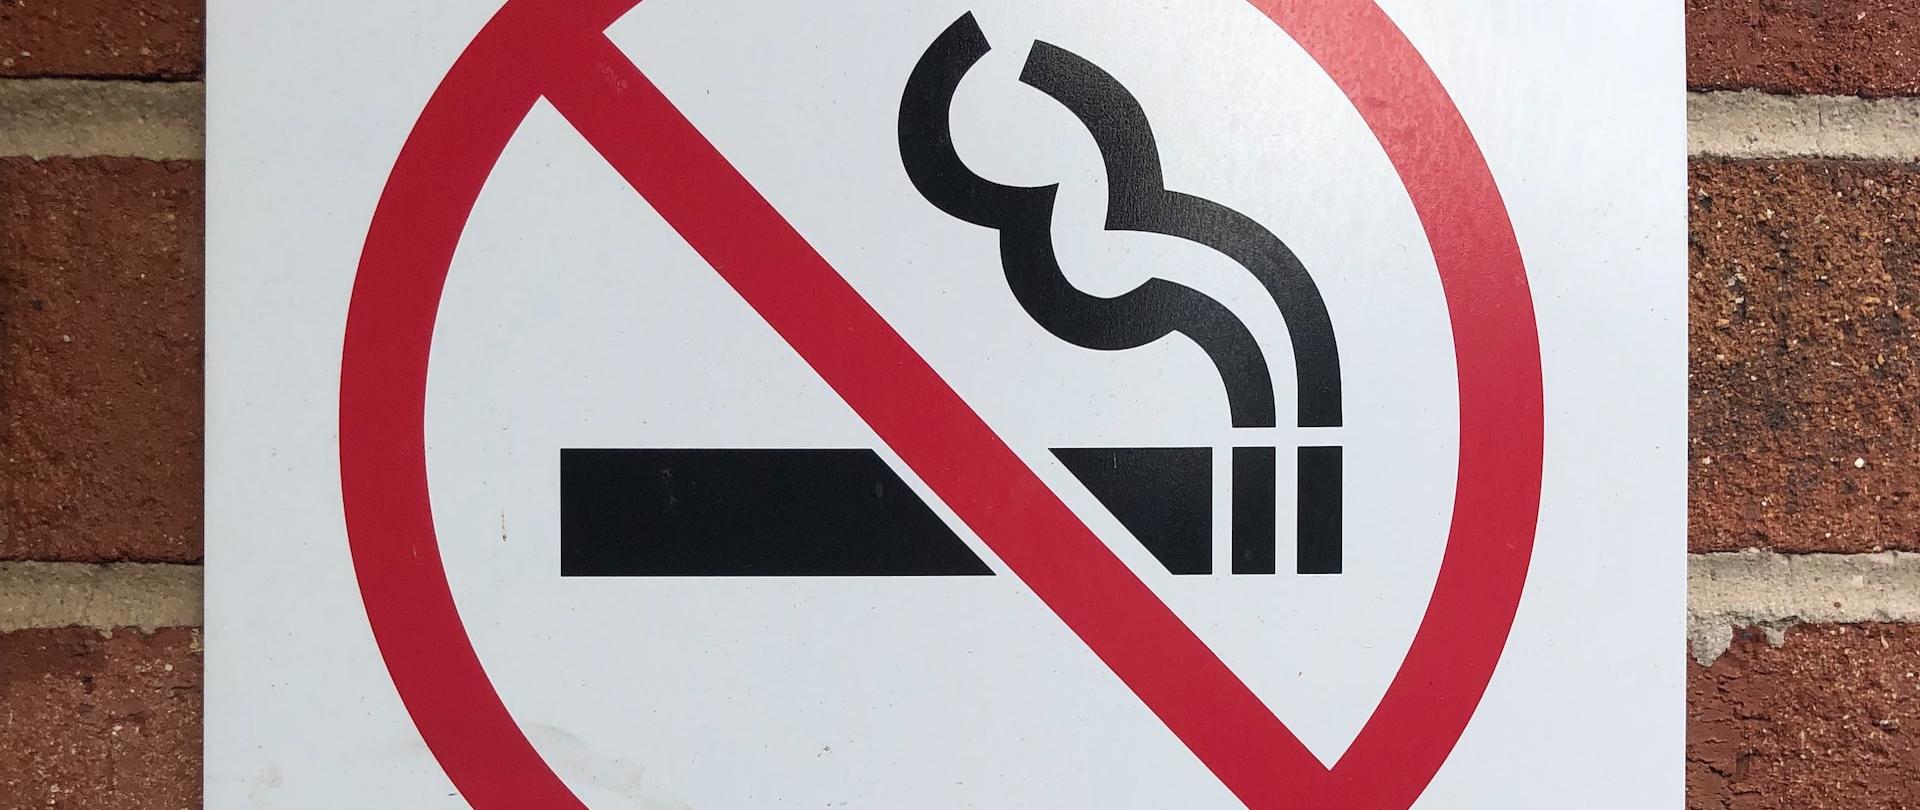 zakaz palenia tablica informacyjna